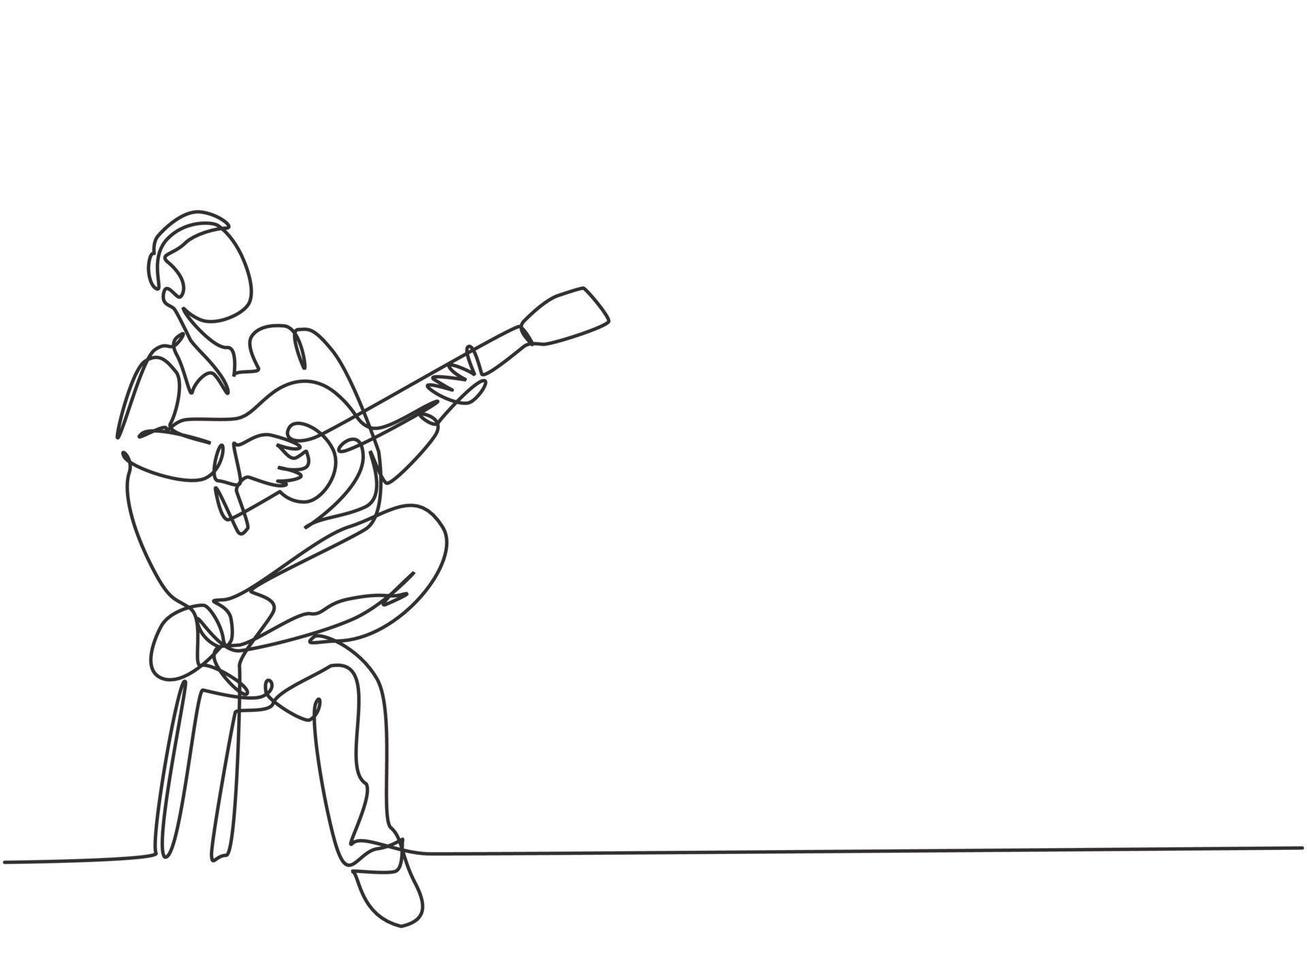 un seul dessin au trait d'un jeune guitariste masculin heureux jouant de la guitare acoustique assis sur une chaise. musicien moderne artiste performance concept ligne continue dessiner design illustration vectorielle graphique vecteur